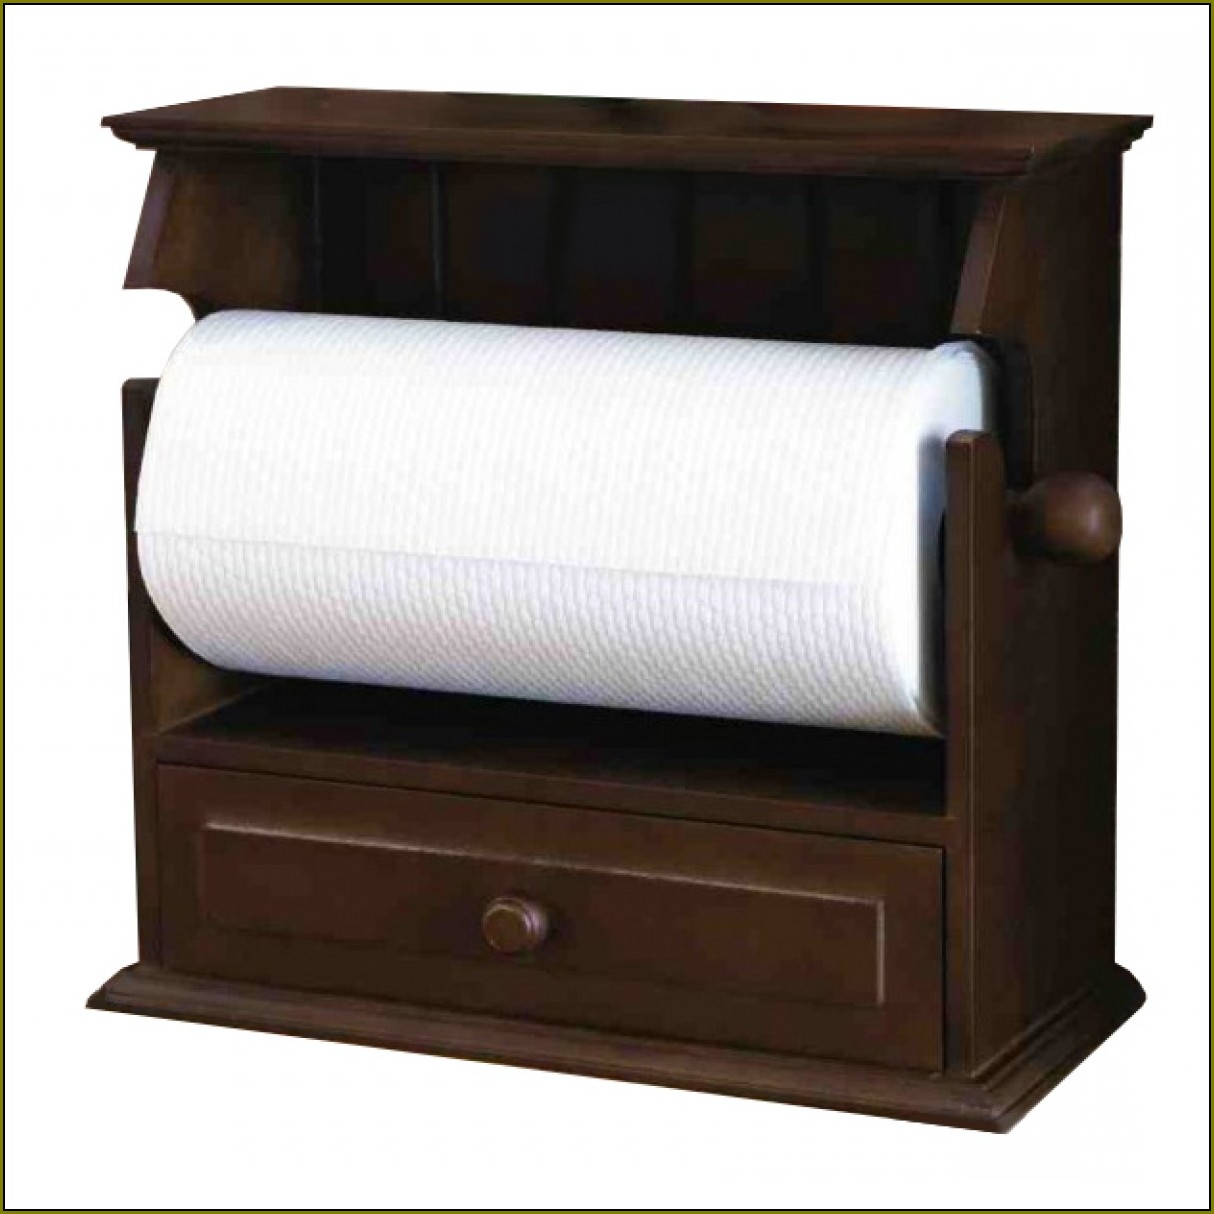 Wooden Paper Towel Holder Under Cabinet